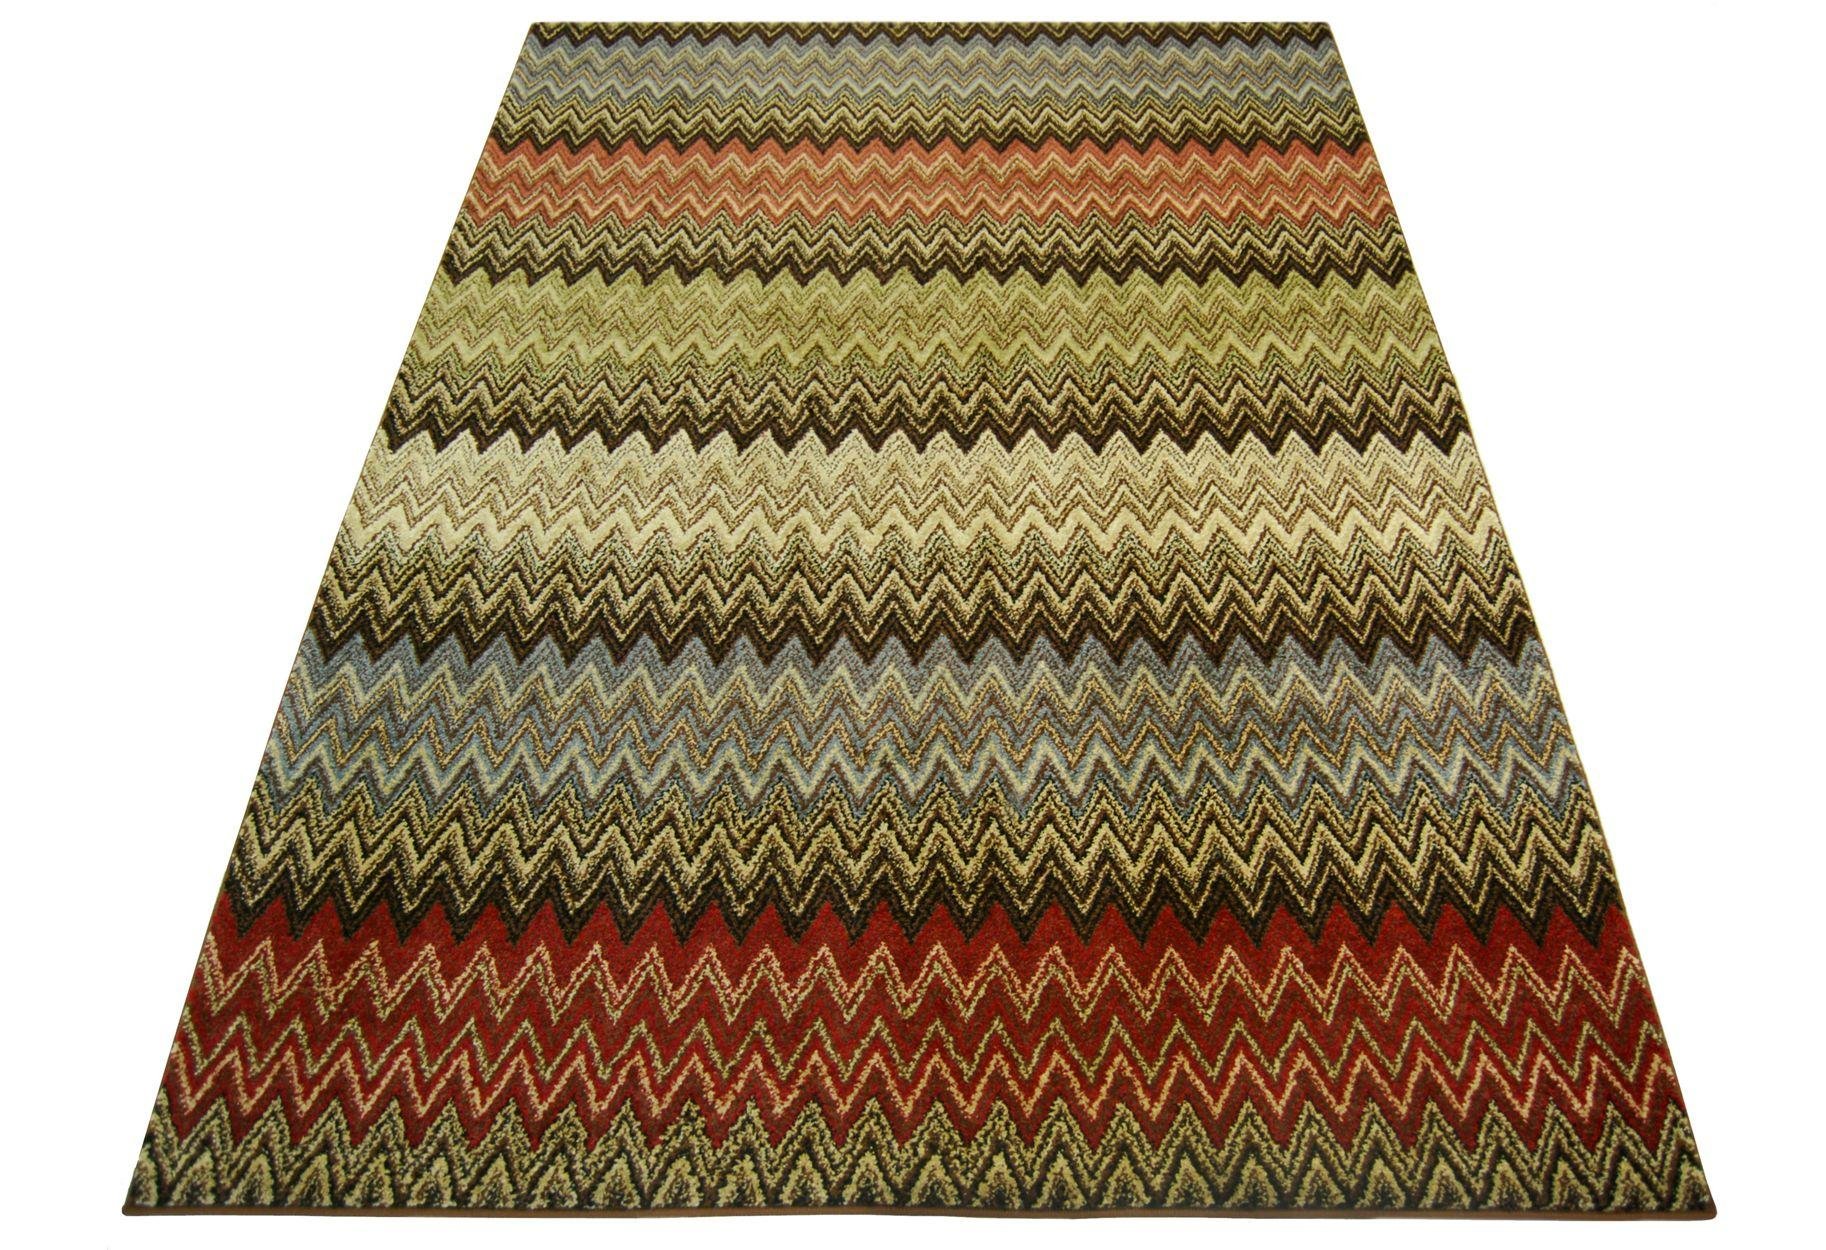 Spirit Zigzag Rug - 160x230cm - Multicoloured